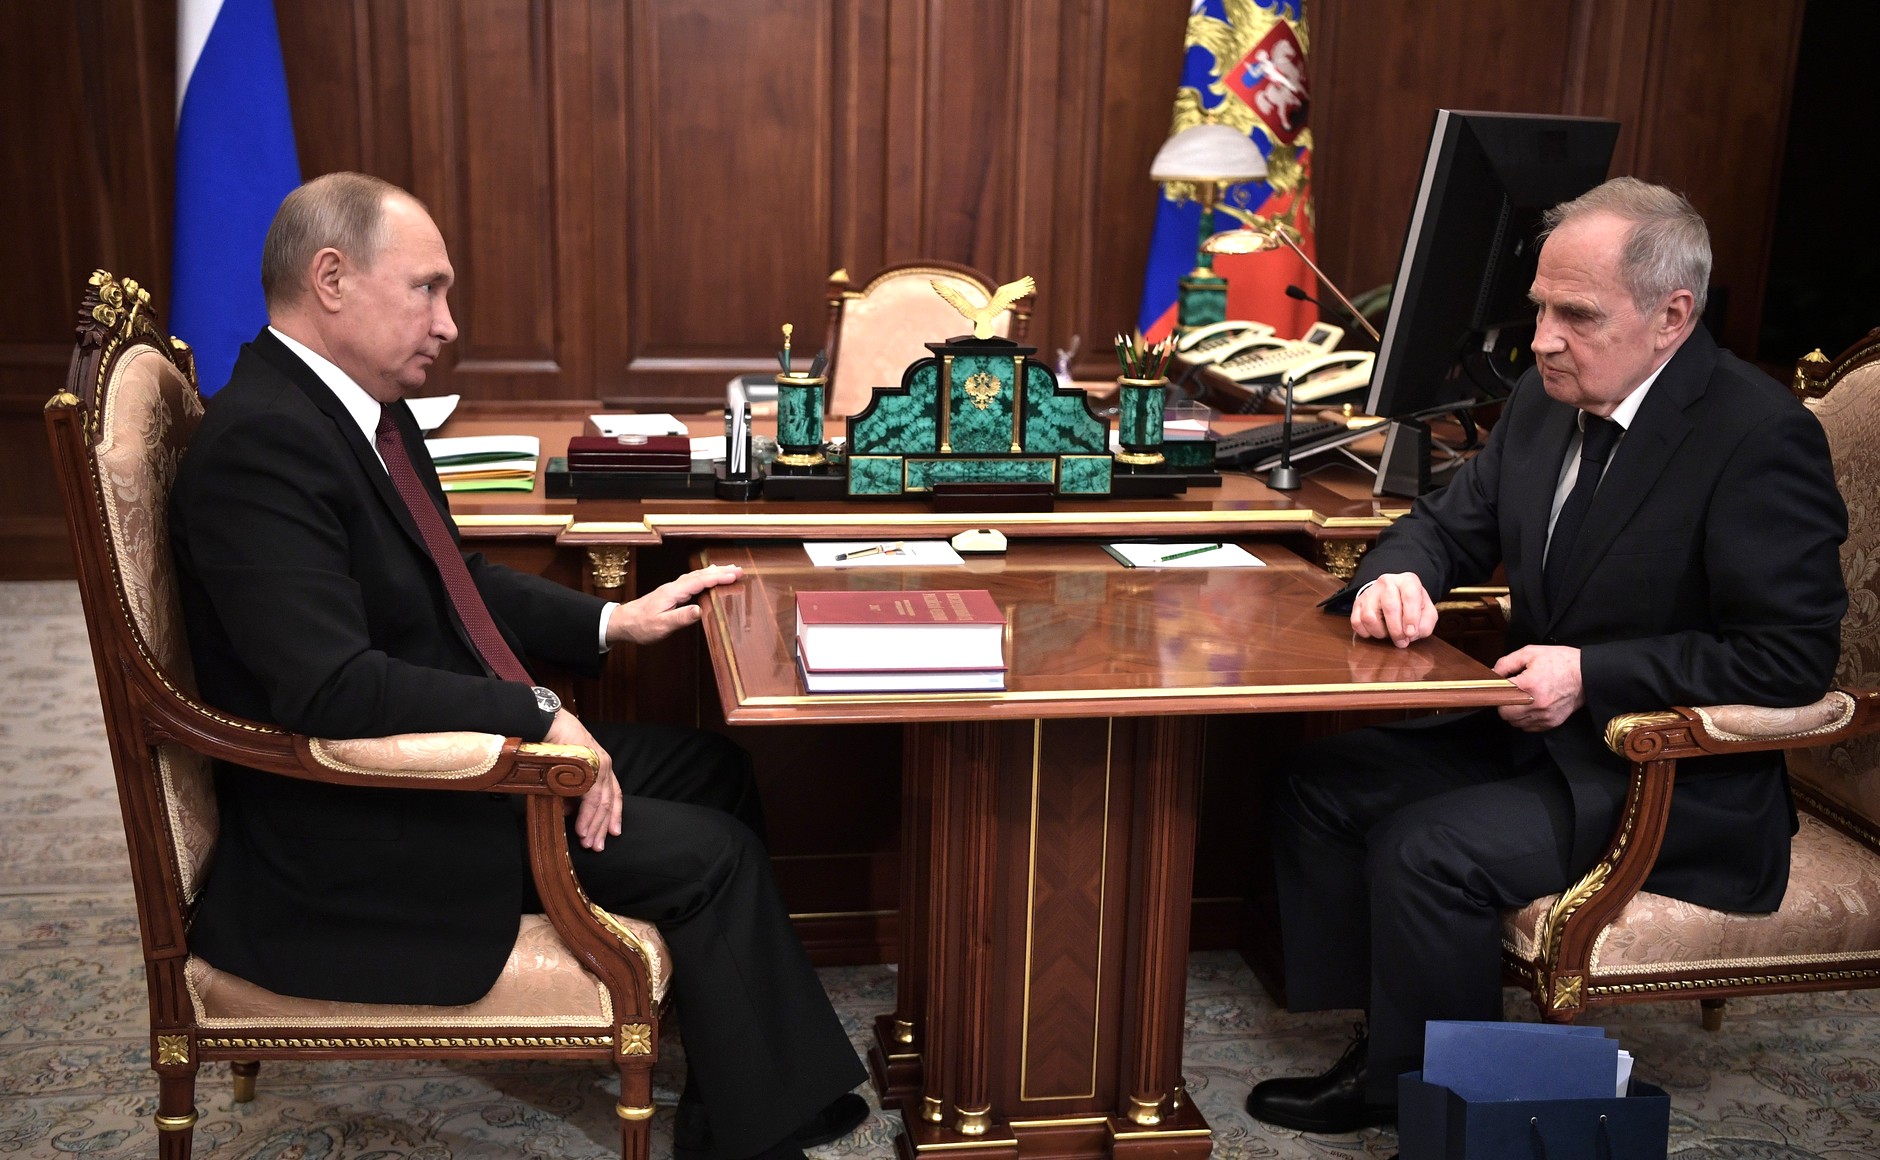 Президент России на встрече с судьями КС сообщил, что сущностное понимание Конституции РФ важно для суверенитета страны Фото: © kremlin.ru